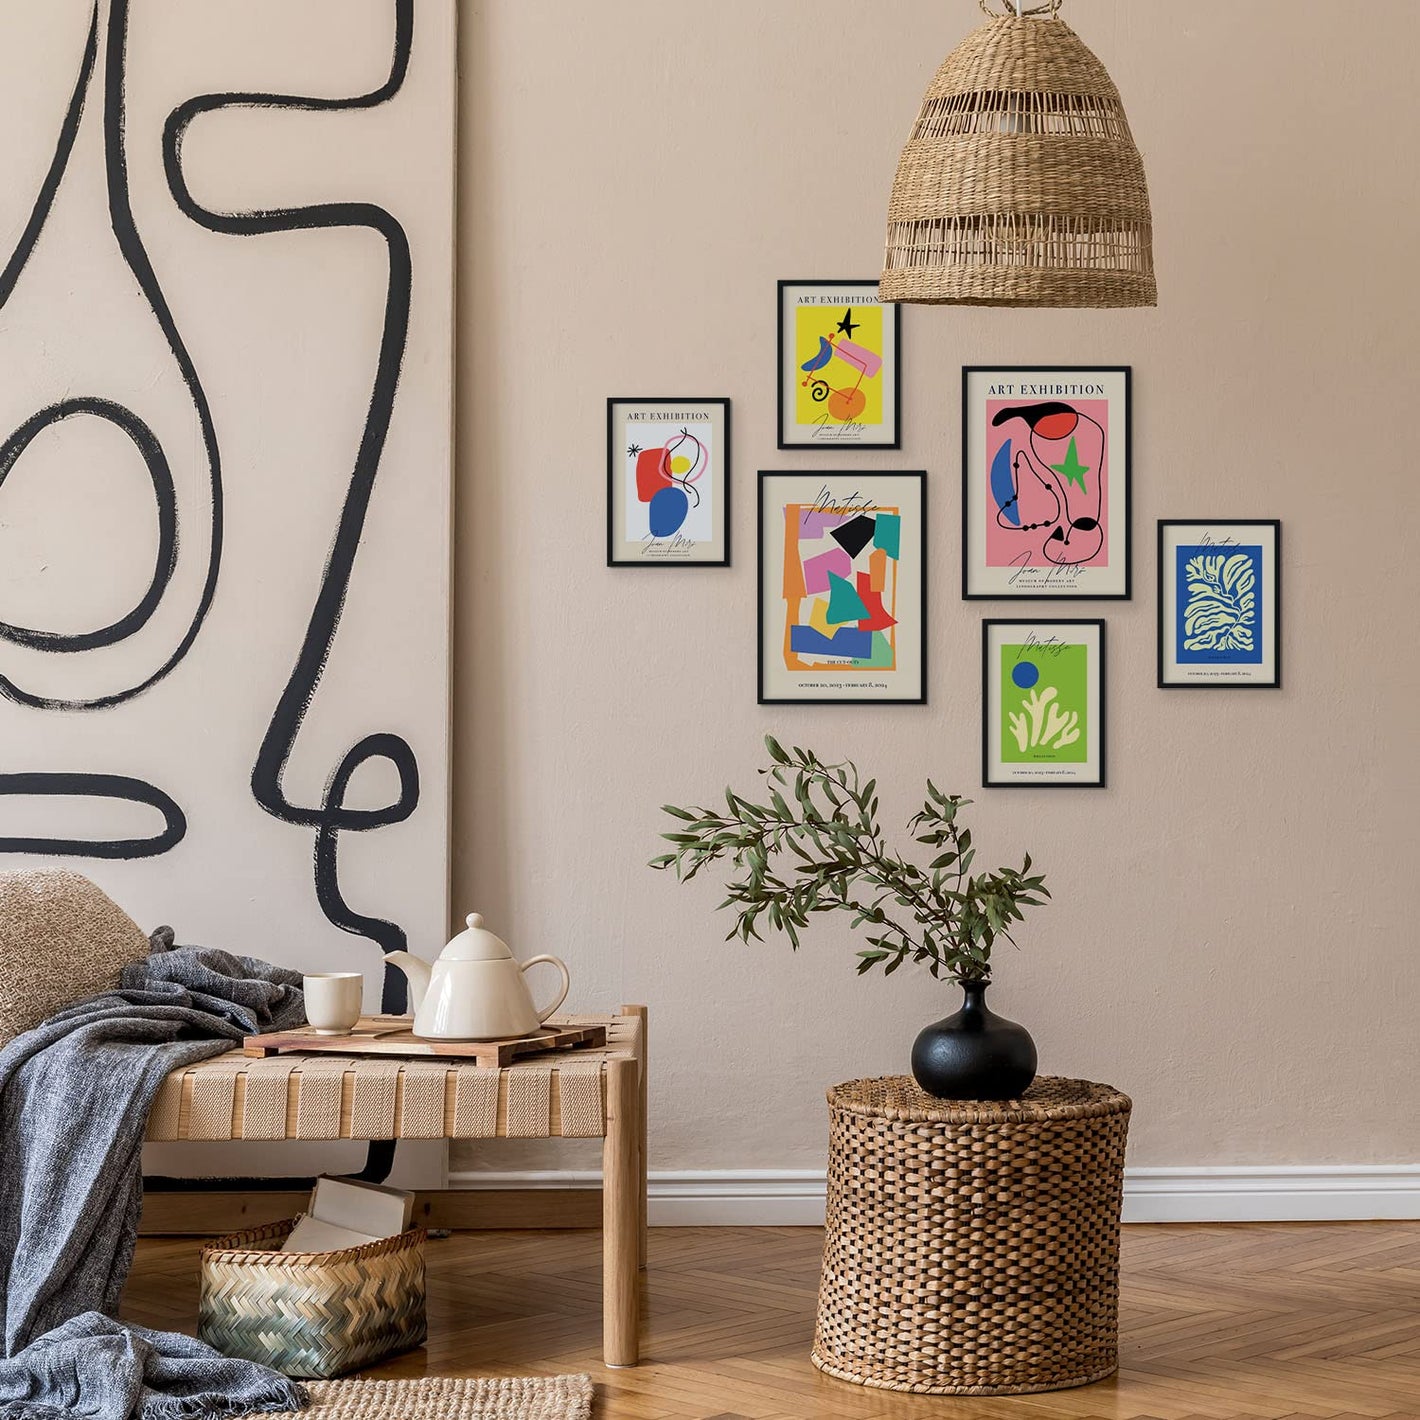 Imagen principal de la exposición de láminas de Joan Miró: Una vista panorámica de una galería de arte llena de coloridas ilustraciones de Joan Miró. Las obras de arte del artista francés Matisse también están presentes. Entra para ver y explorar todas l